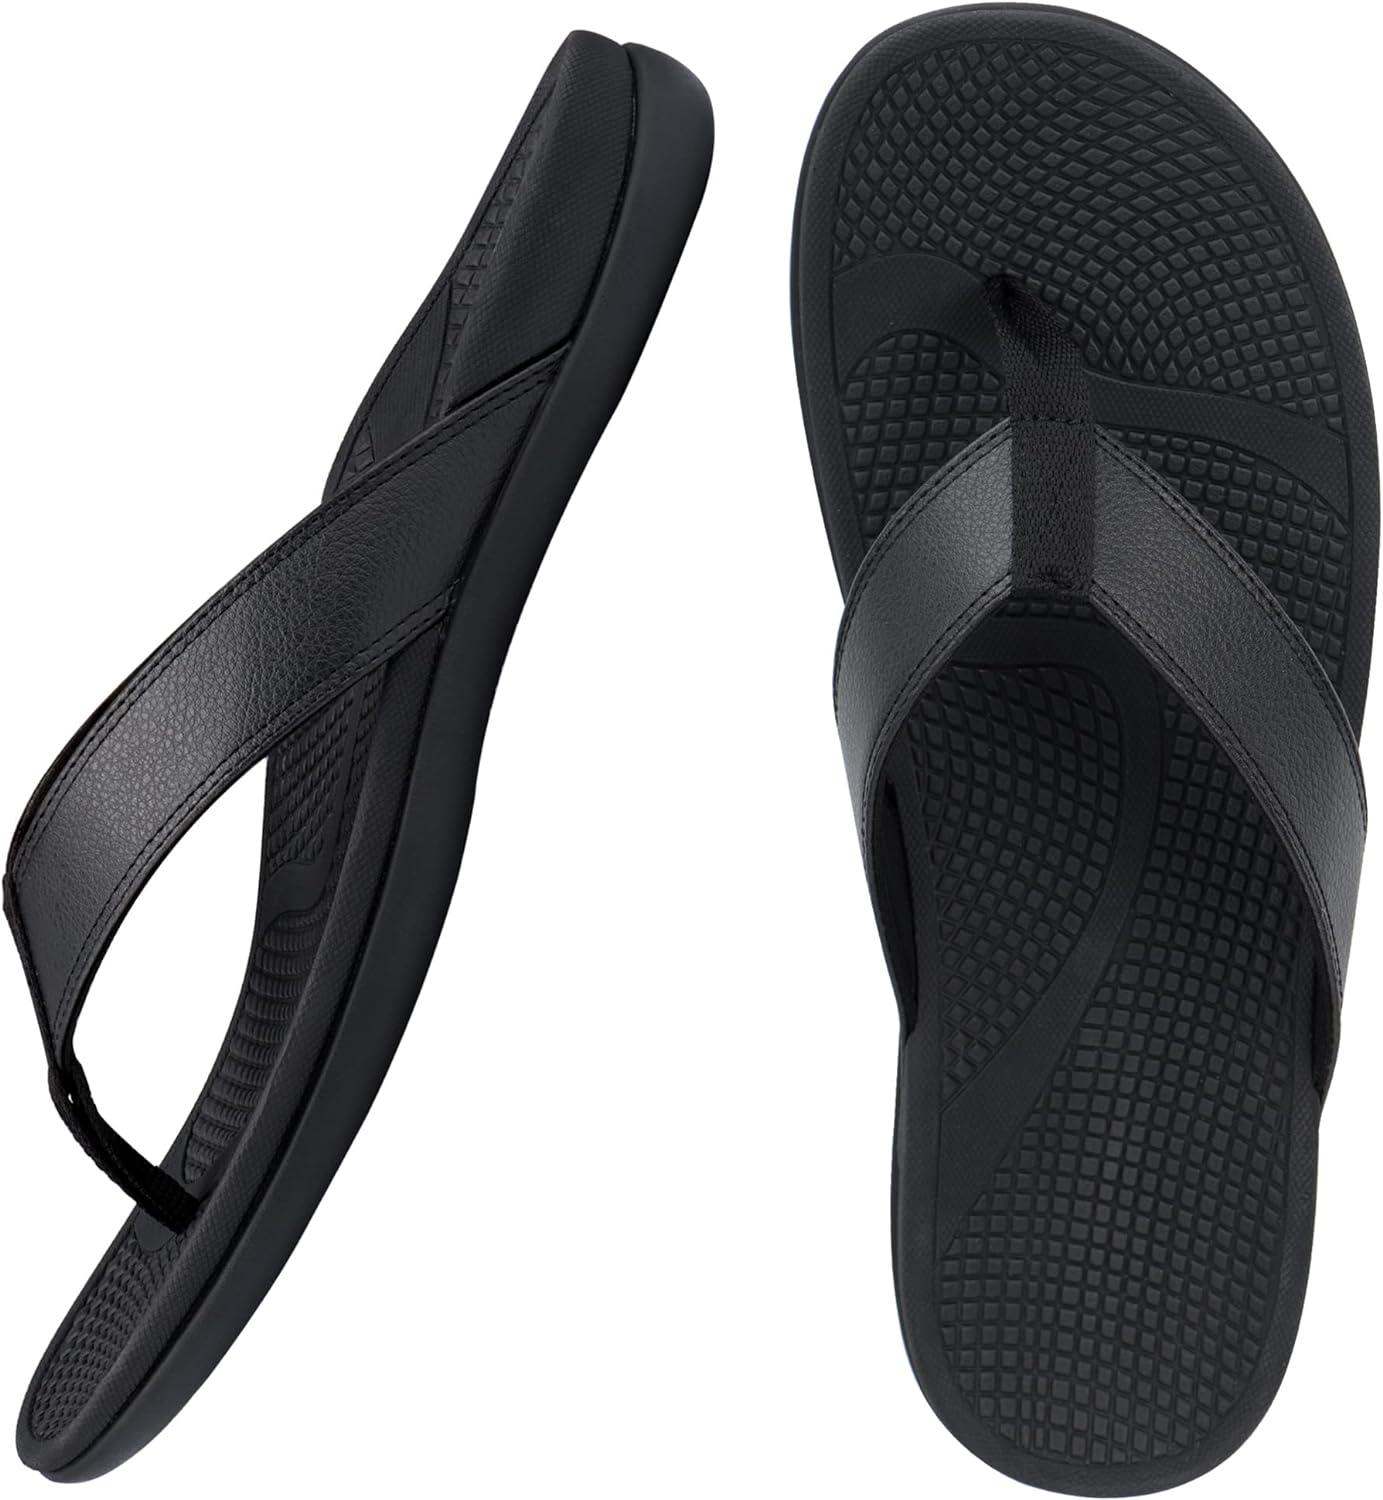 Top 215+ foot pain relief sandals